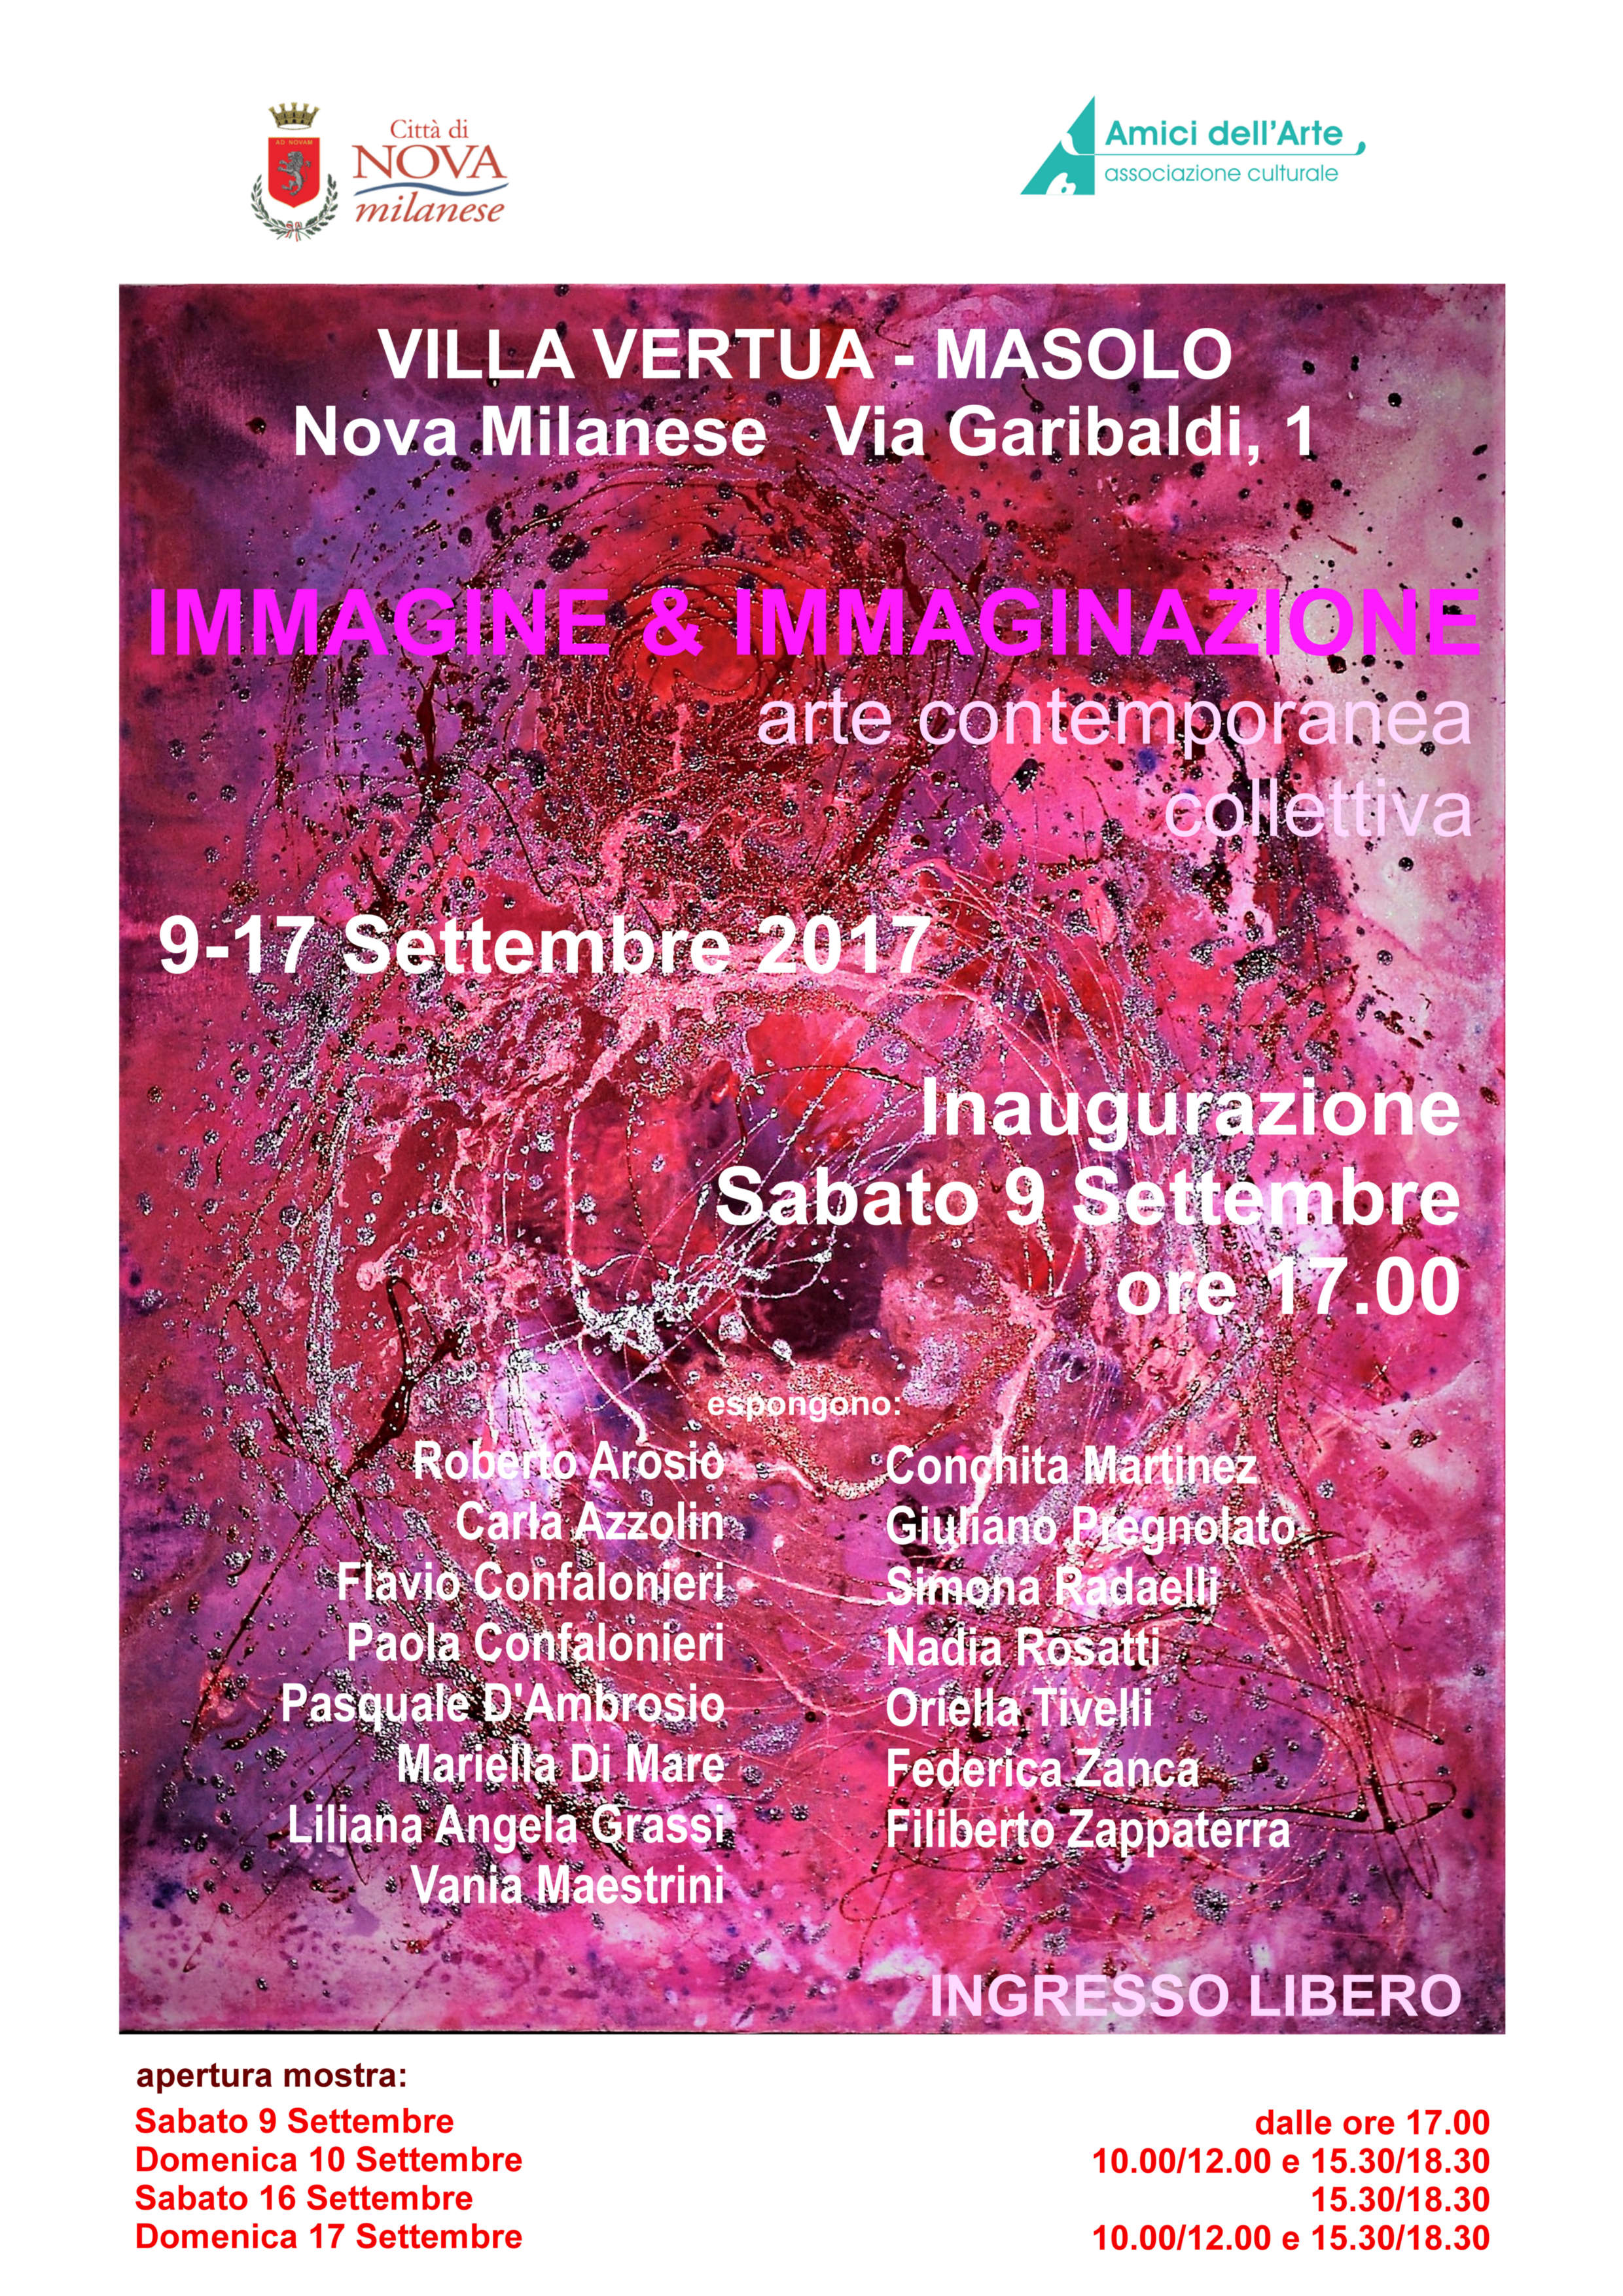 2017 Immagine & Immaginazione - Villa Vertua Nova